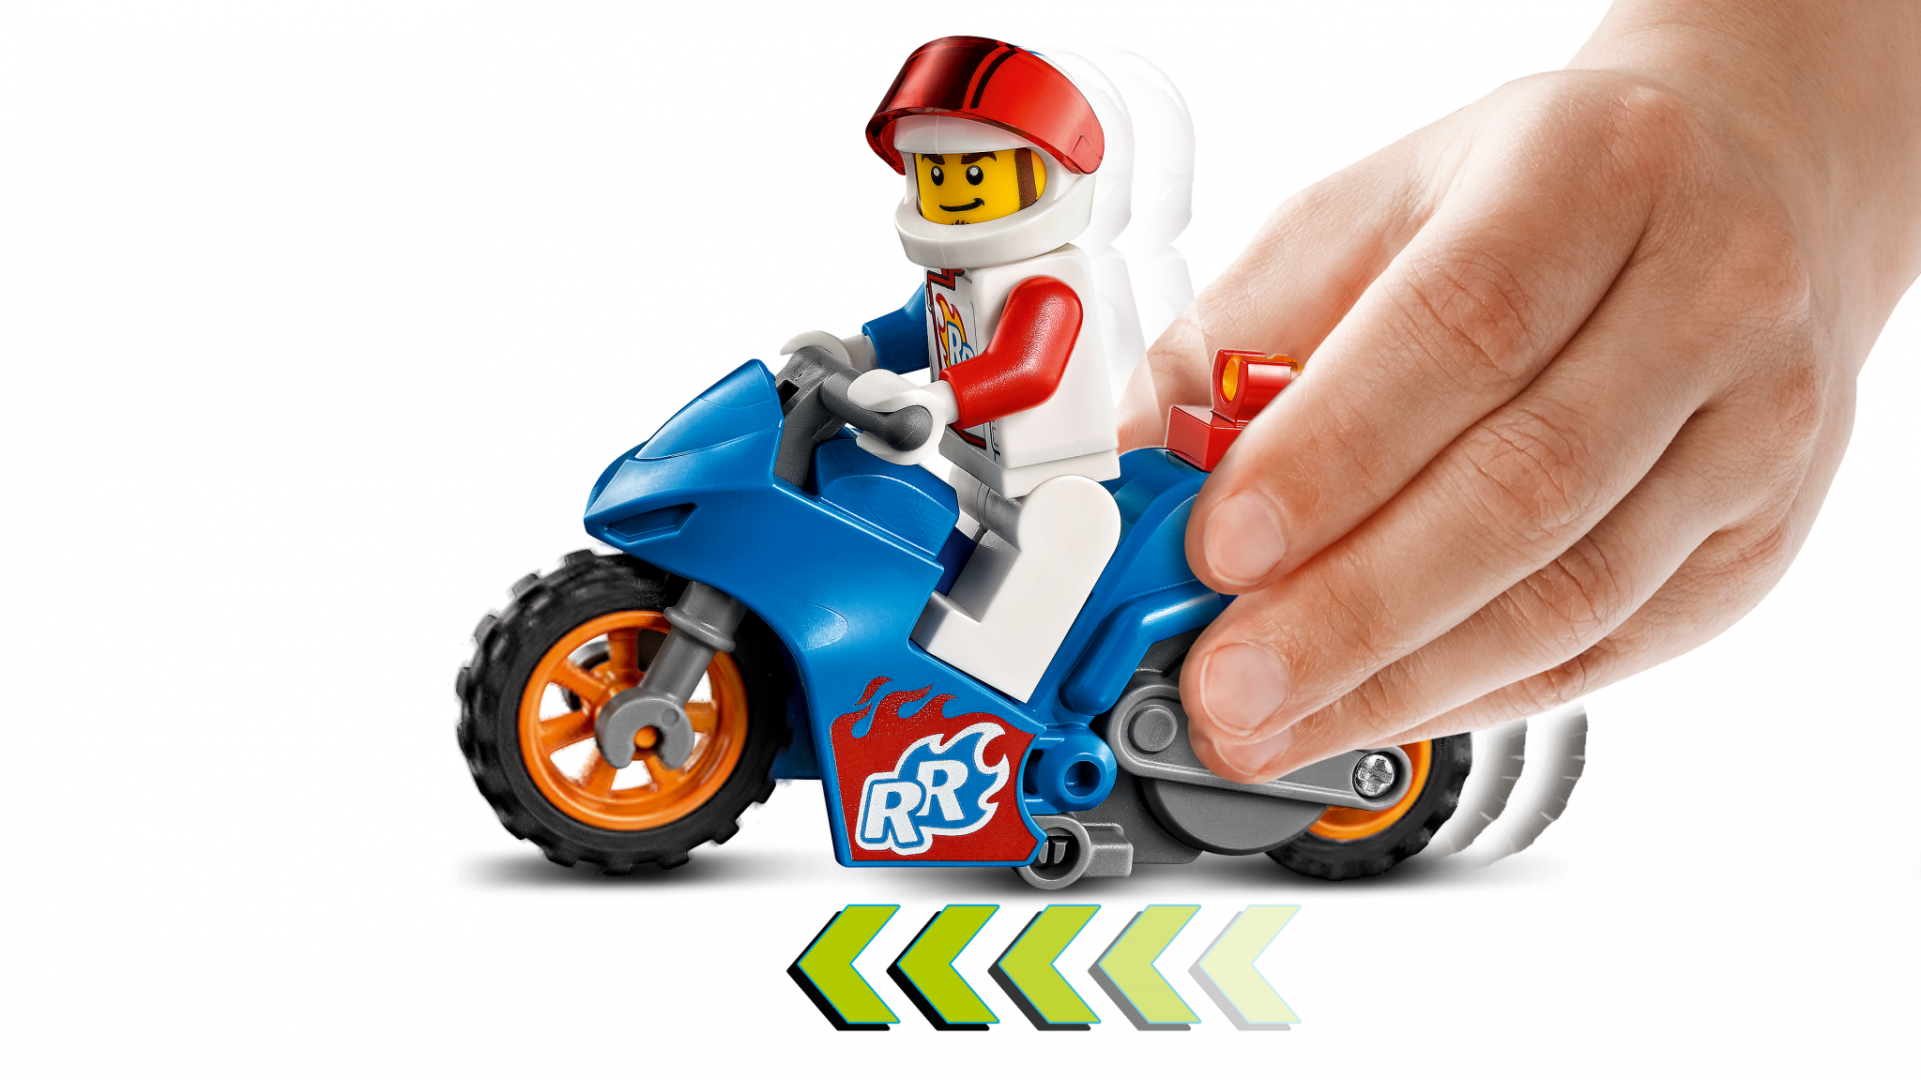 Jucarie Lego, Motocicleta cascadorie-racheta, 60298